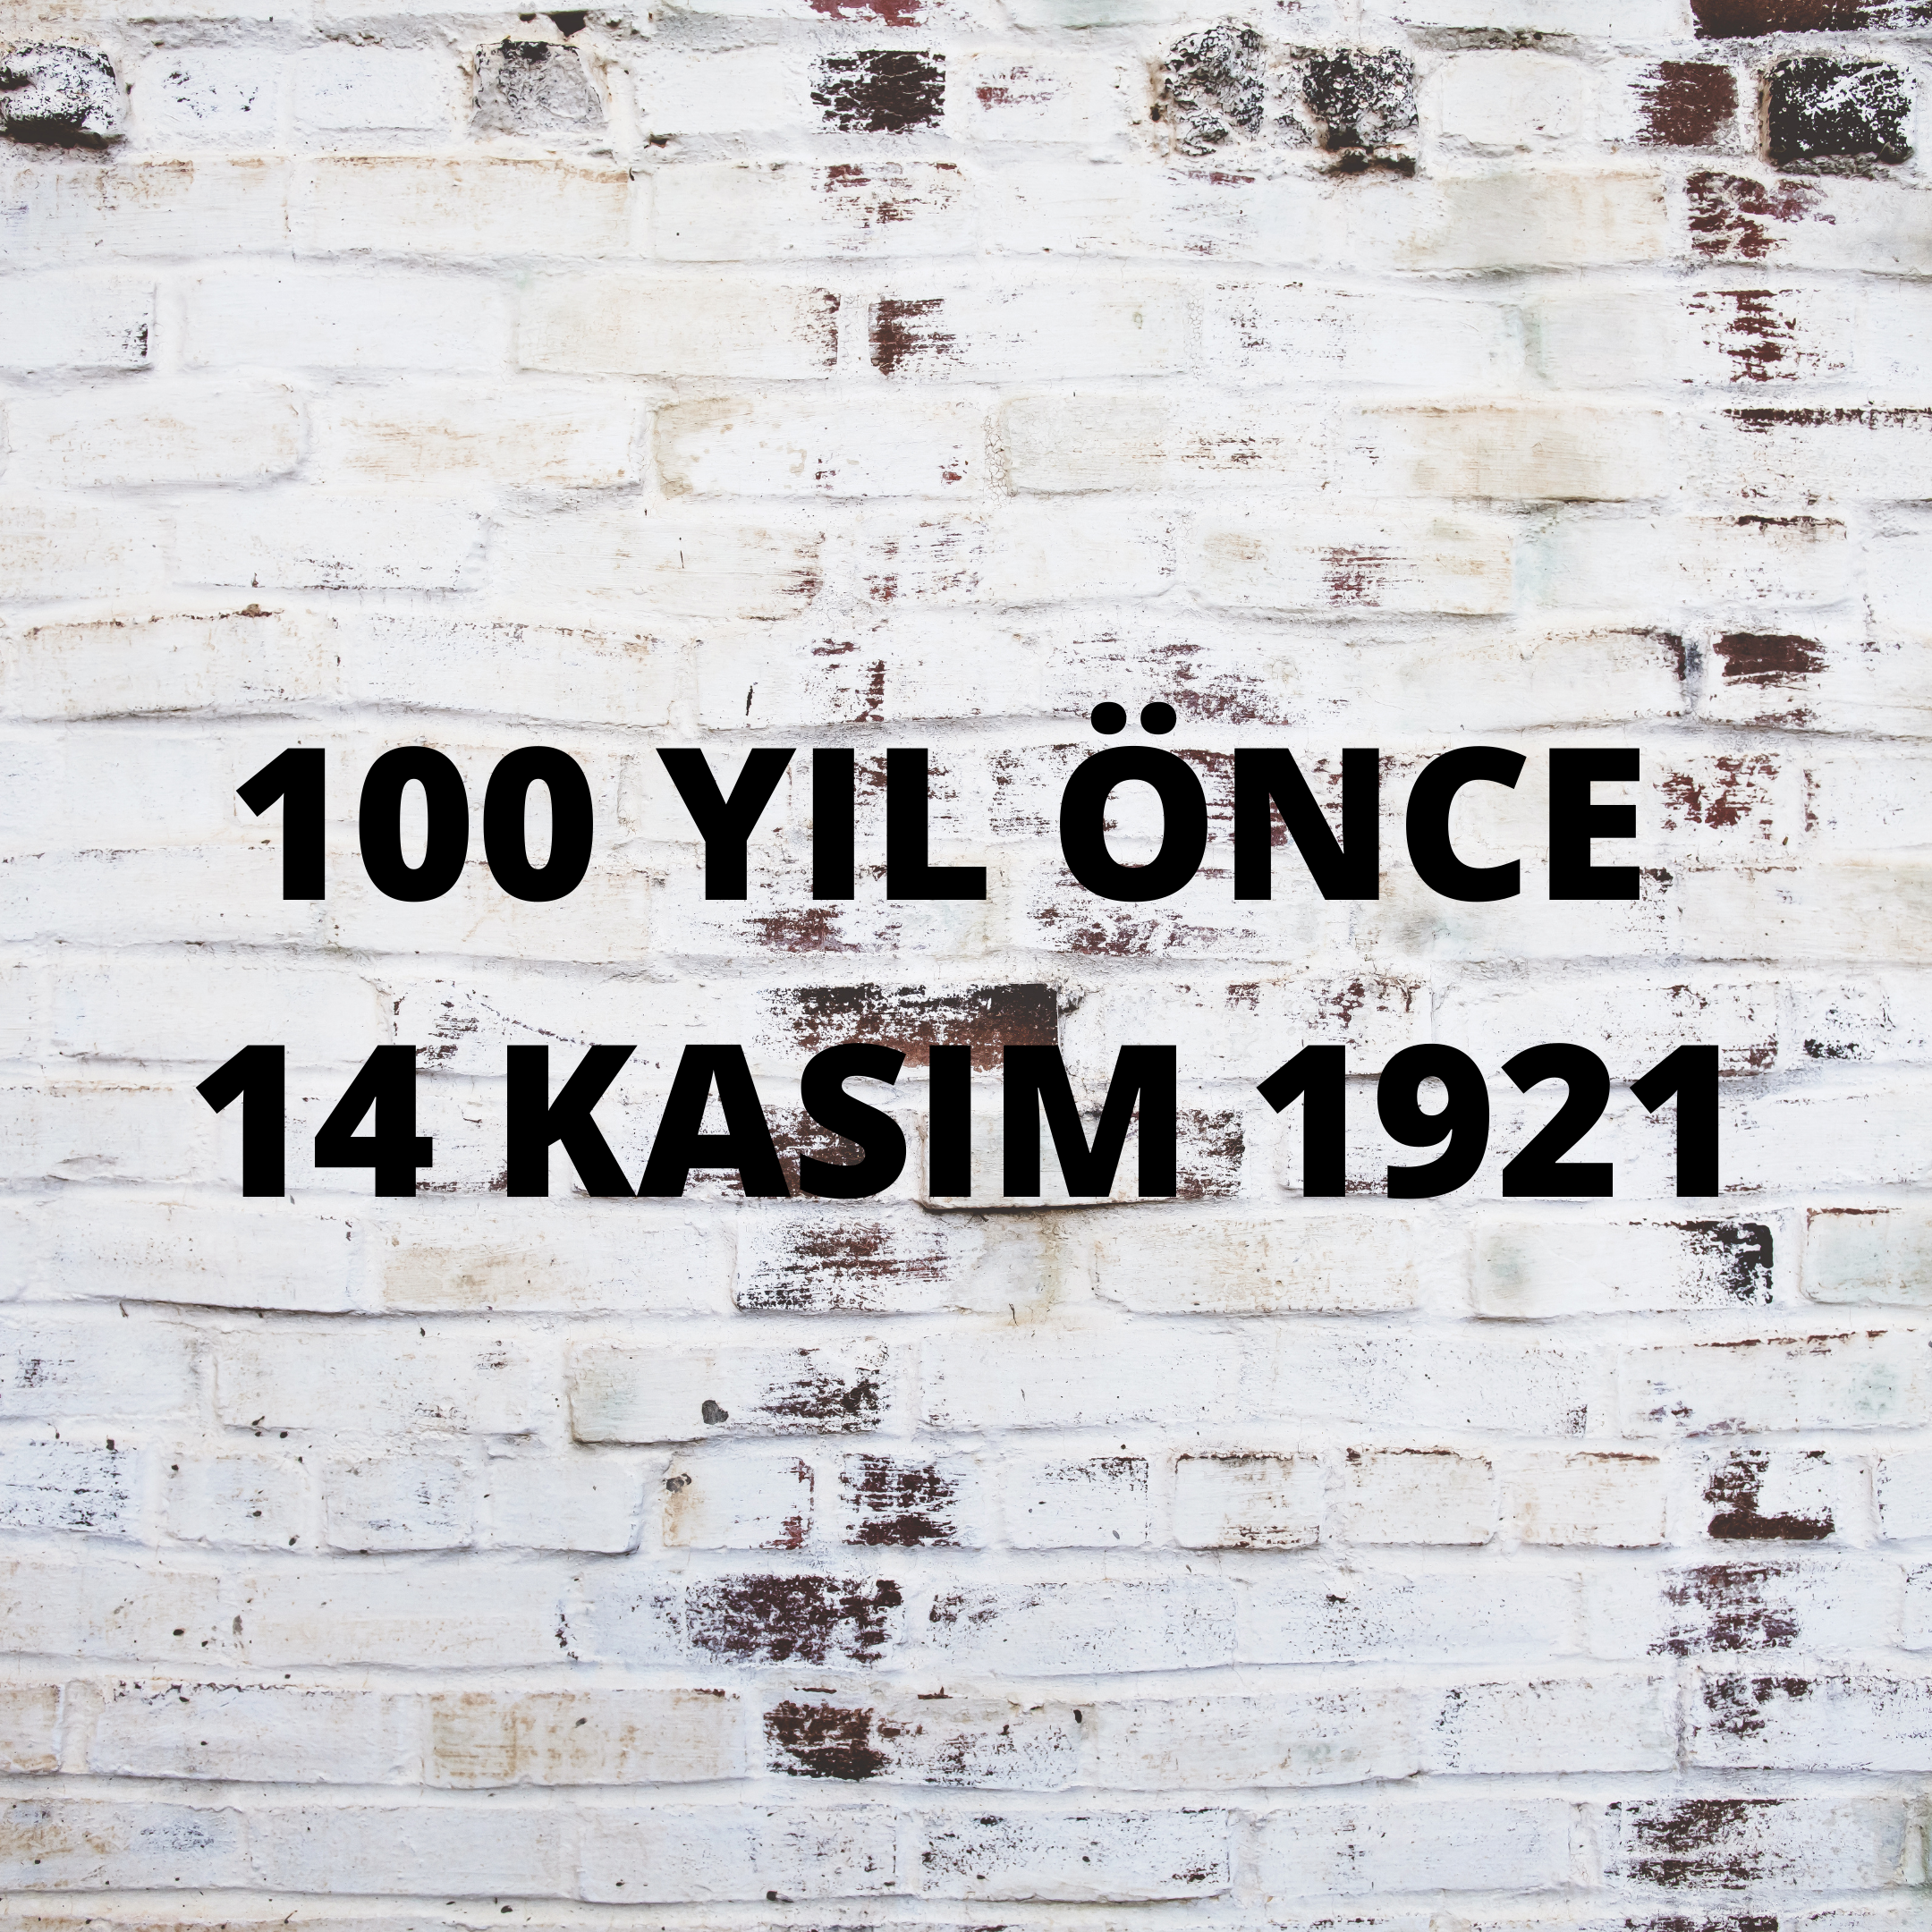 100 YIL ÖNCE 14 KASIM 1921